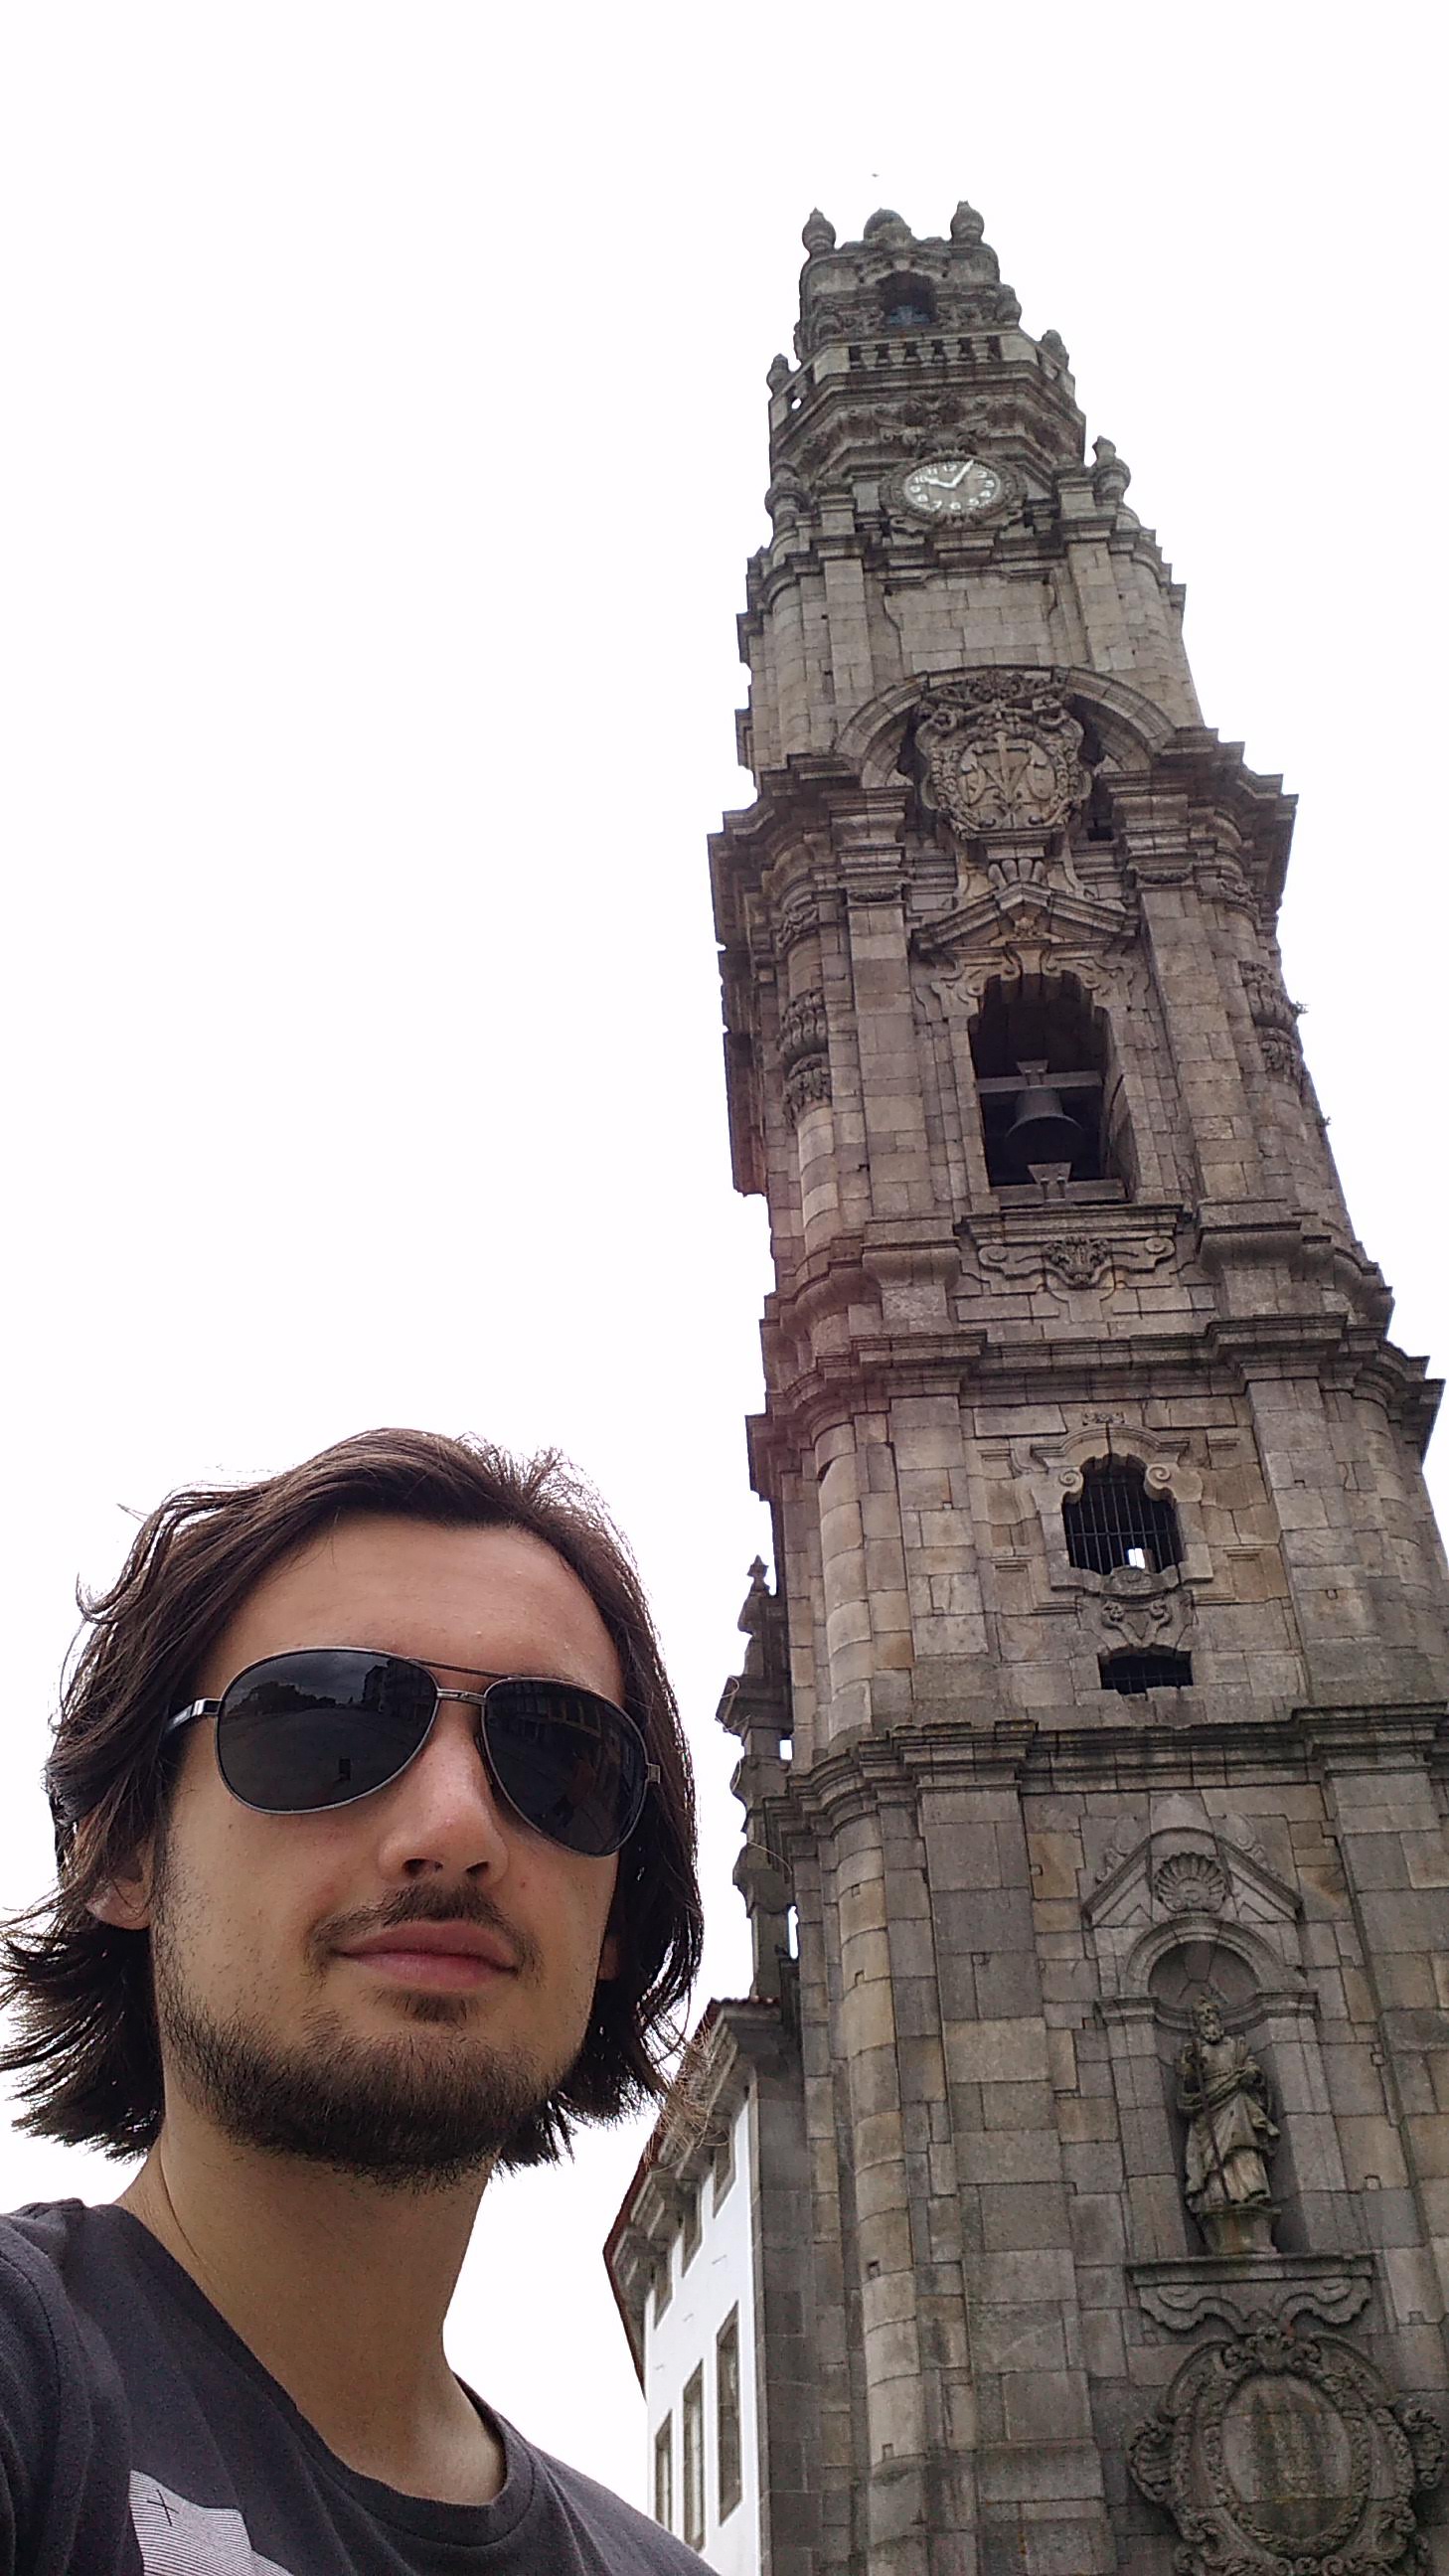 O estudante mora em Porto onde a Torre dos Clérigos é um famoso ponto turístico